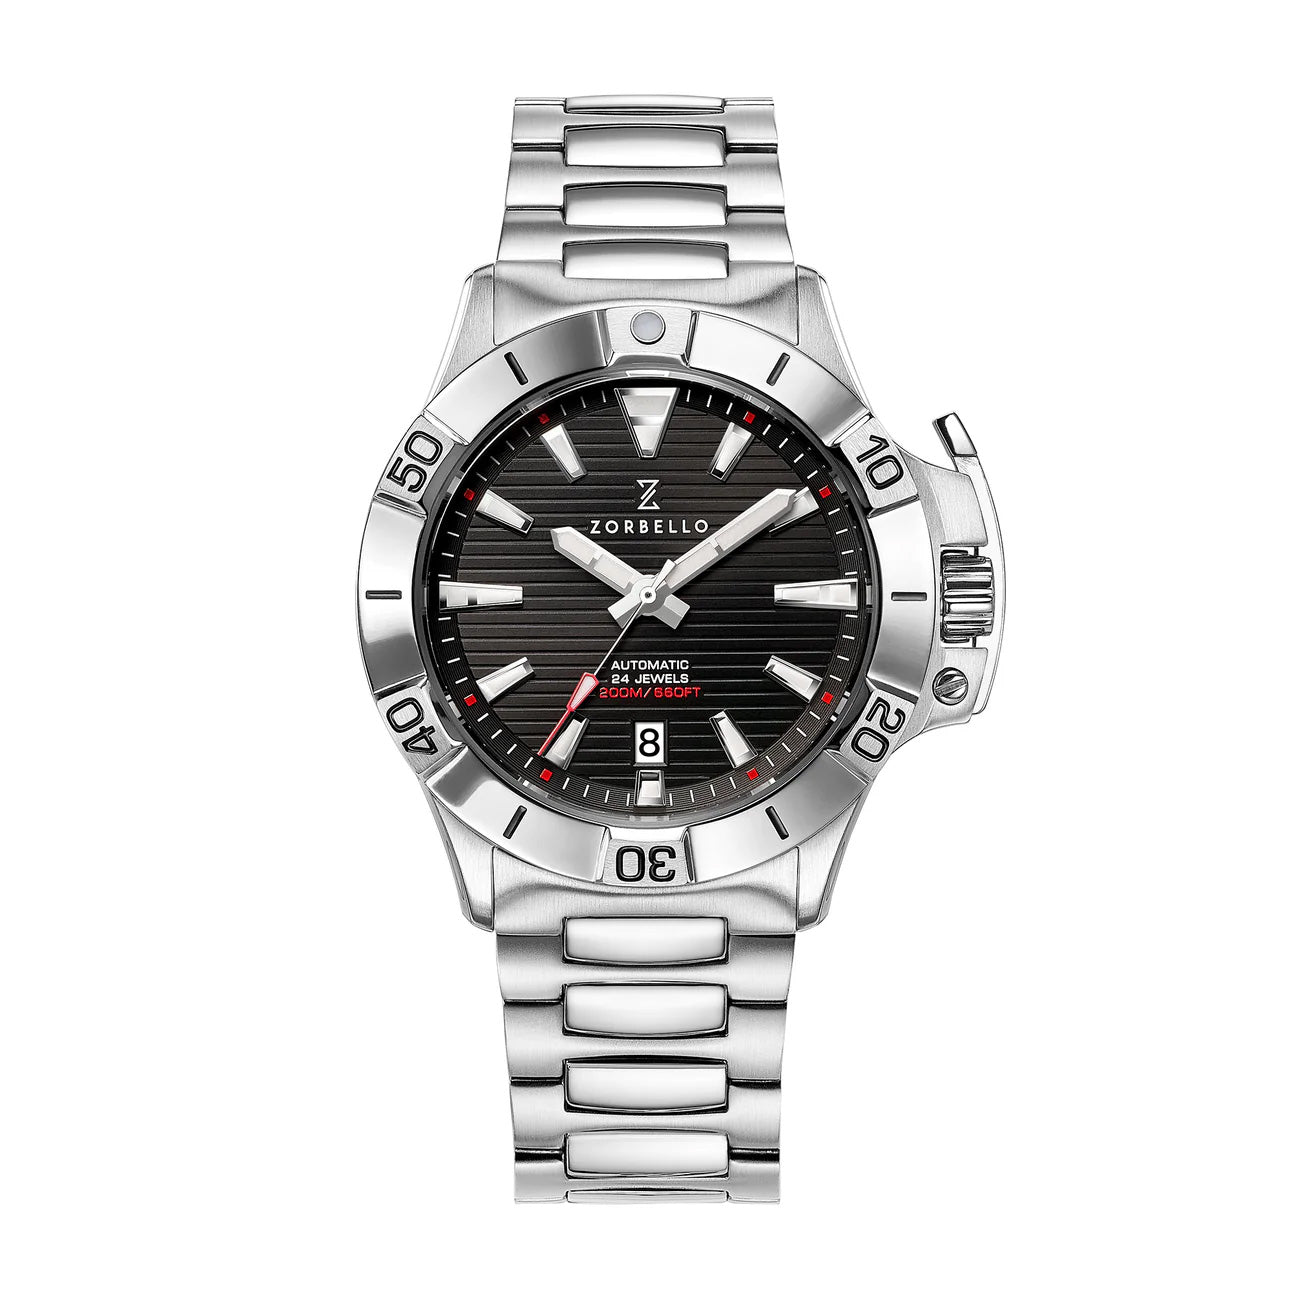 Zorbello D1 Ocean Men's Black Watch ZBAG001